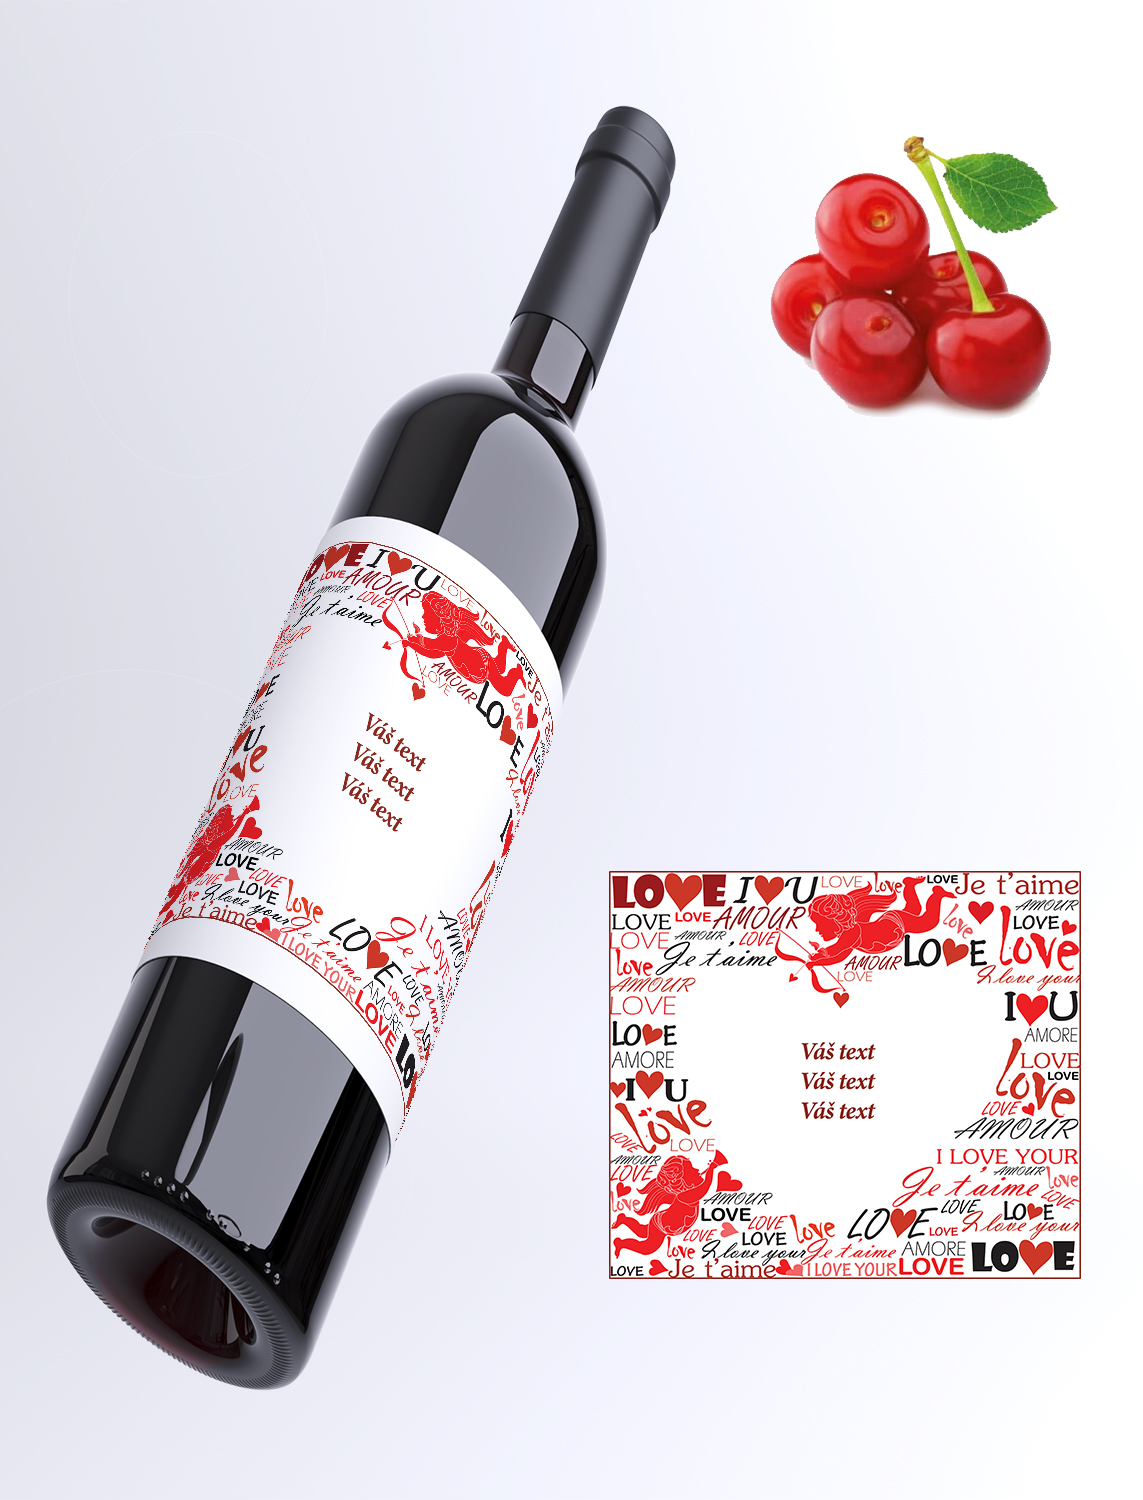 LOVE - Váš text - višňové víno